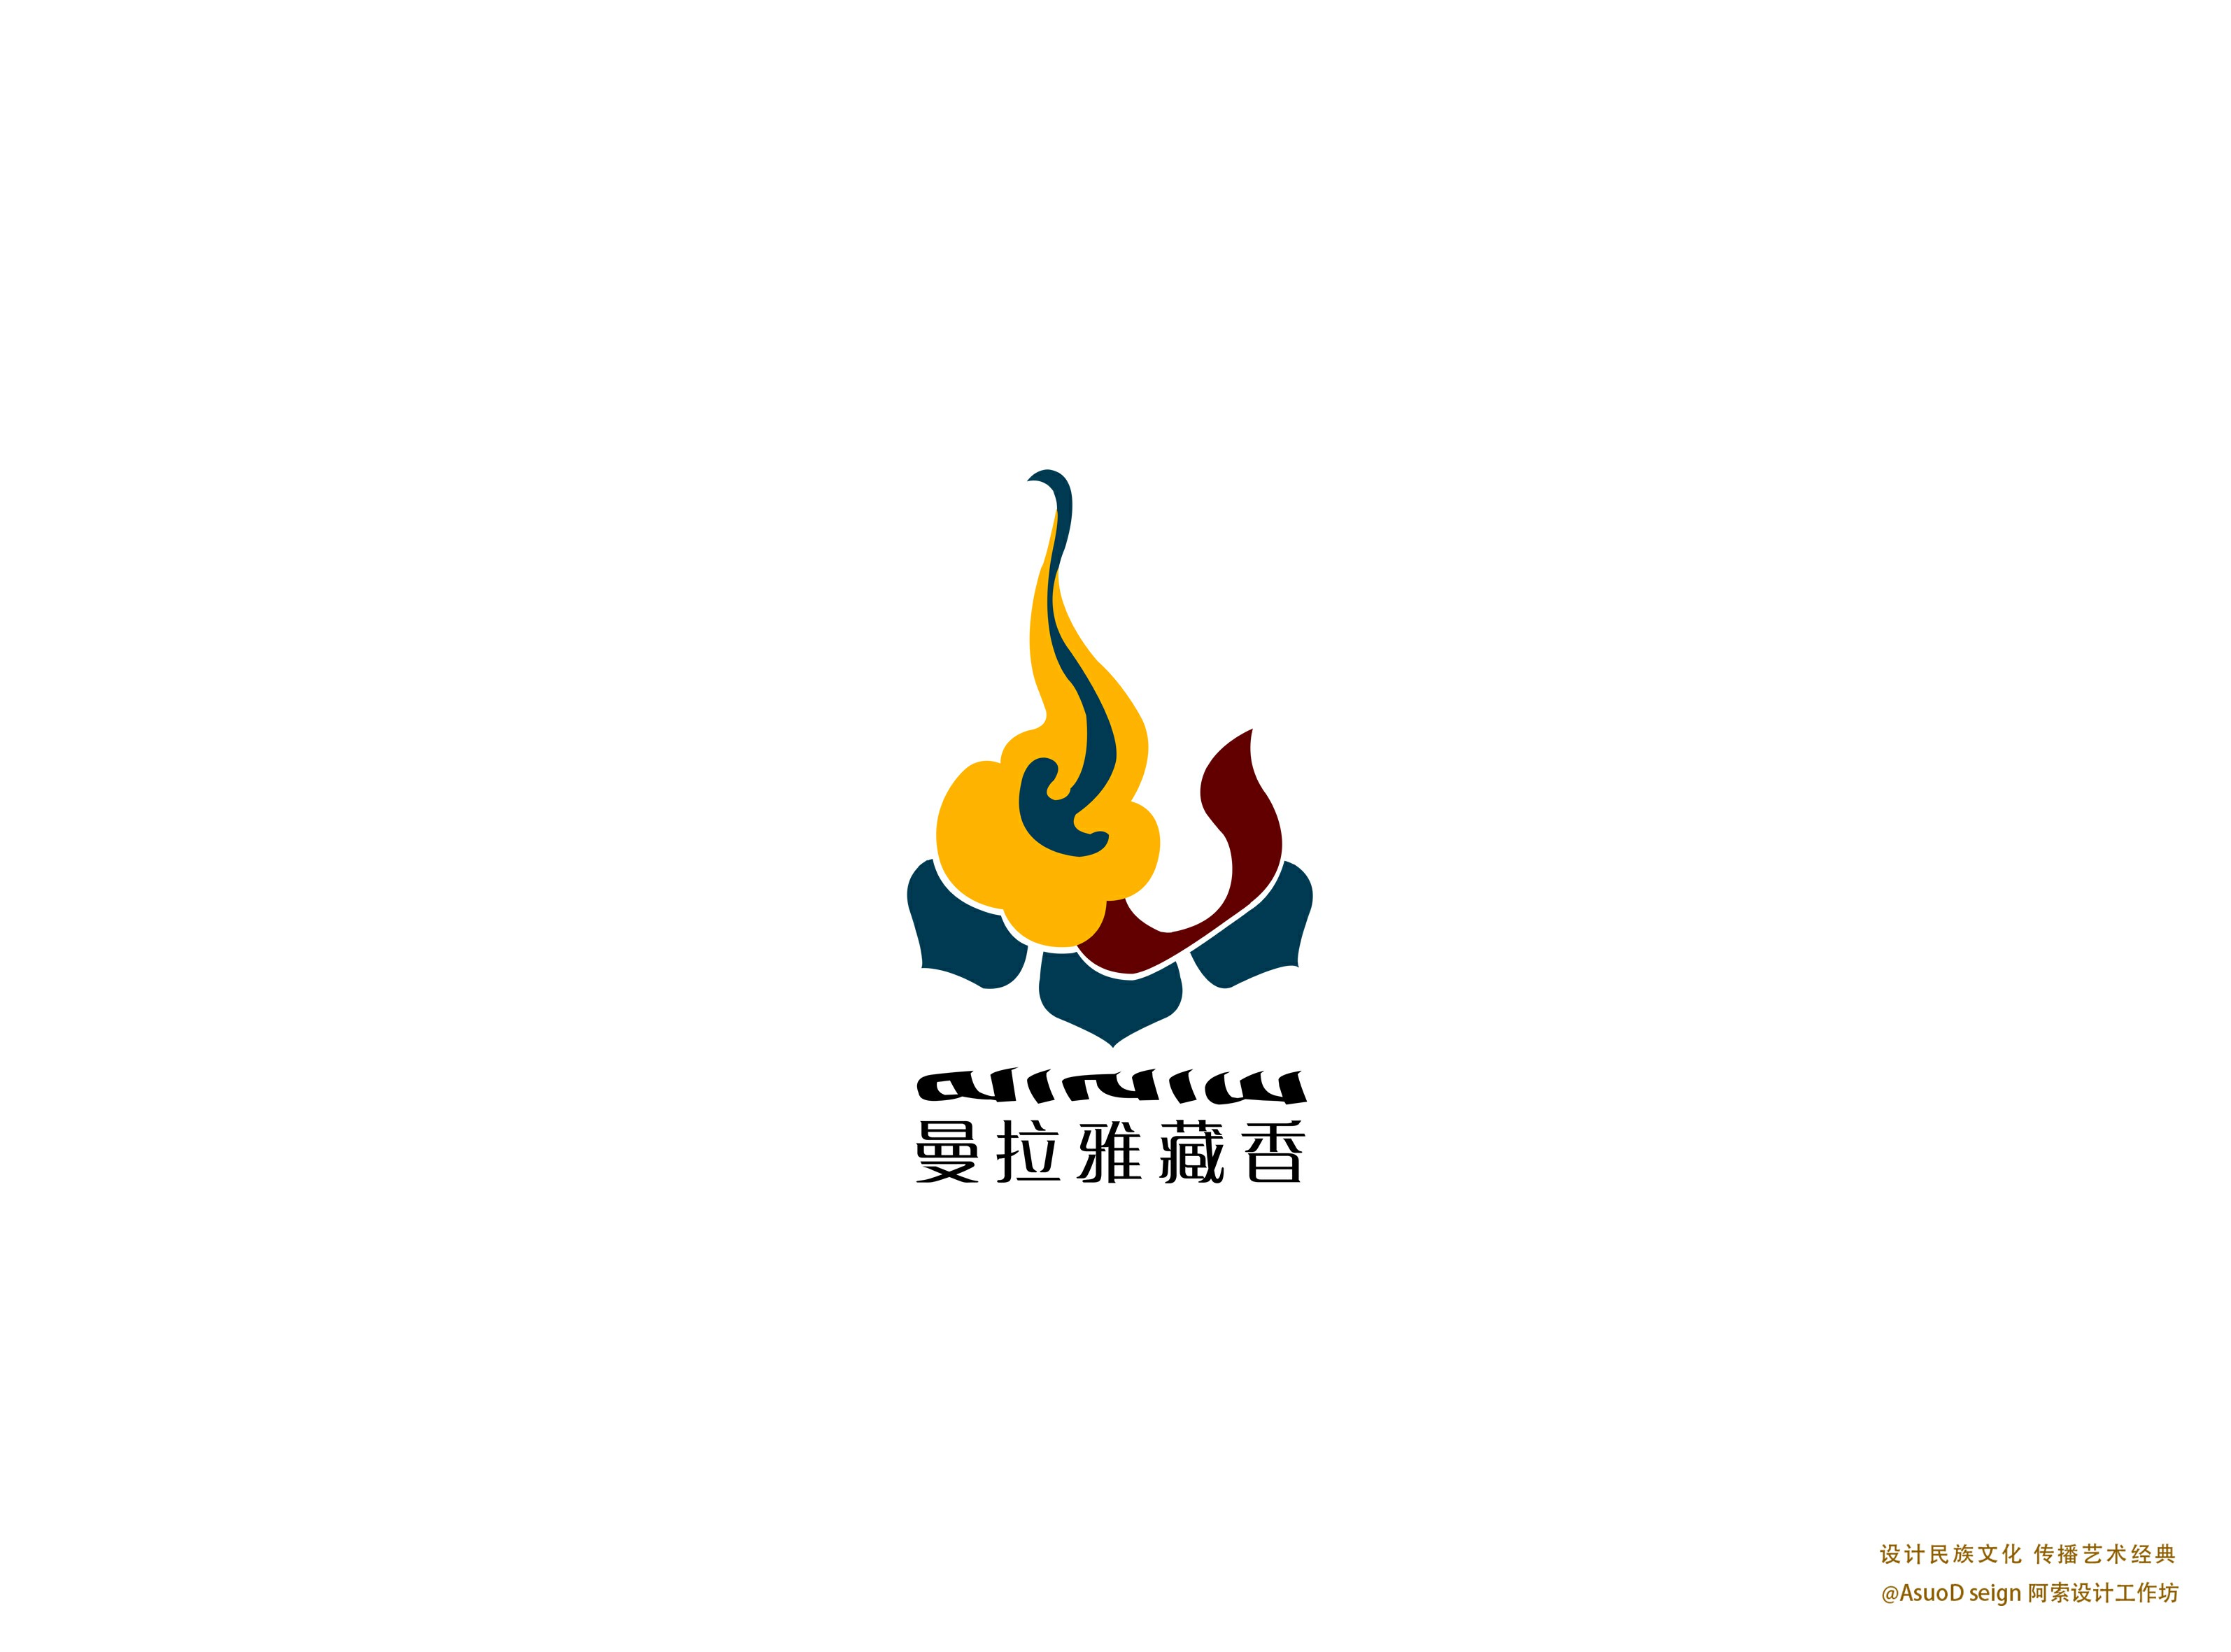 藏式风格logo设计软件图片